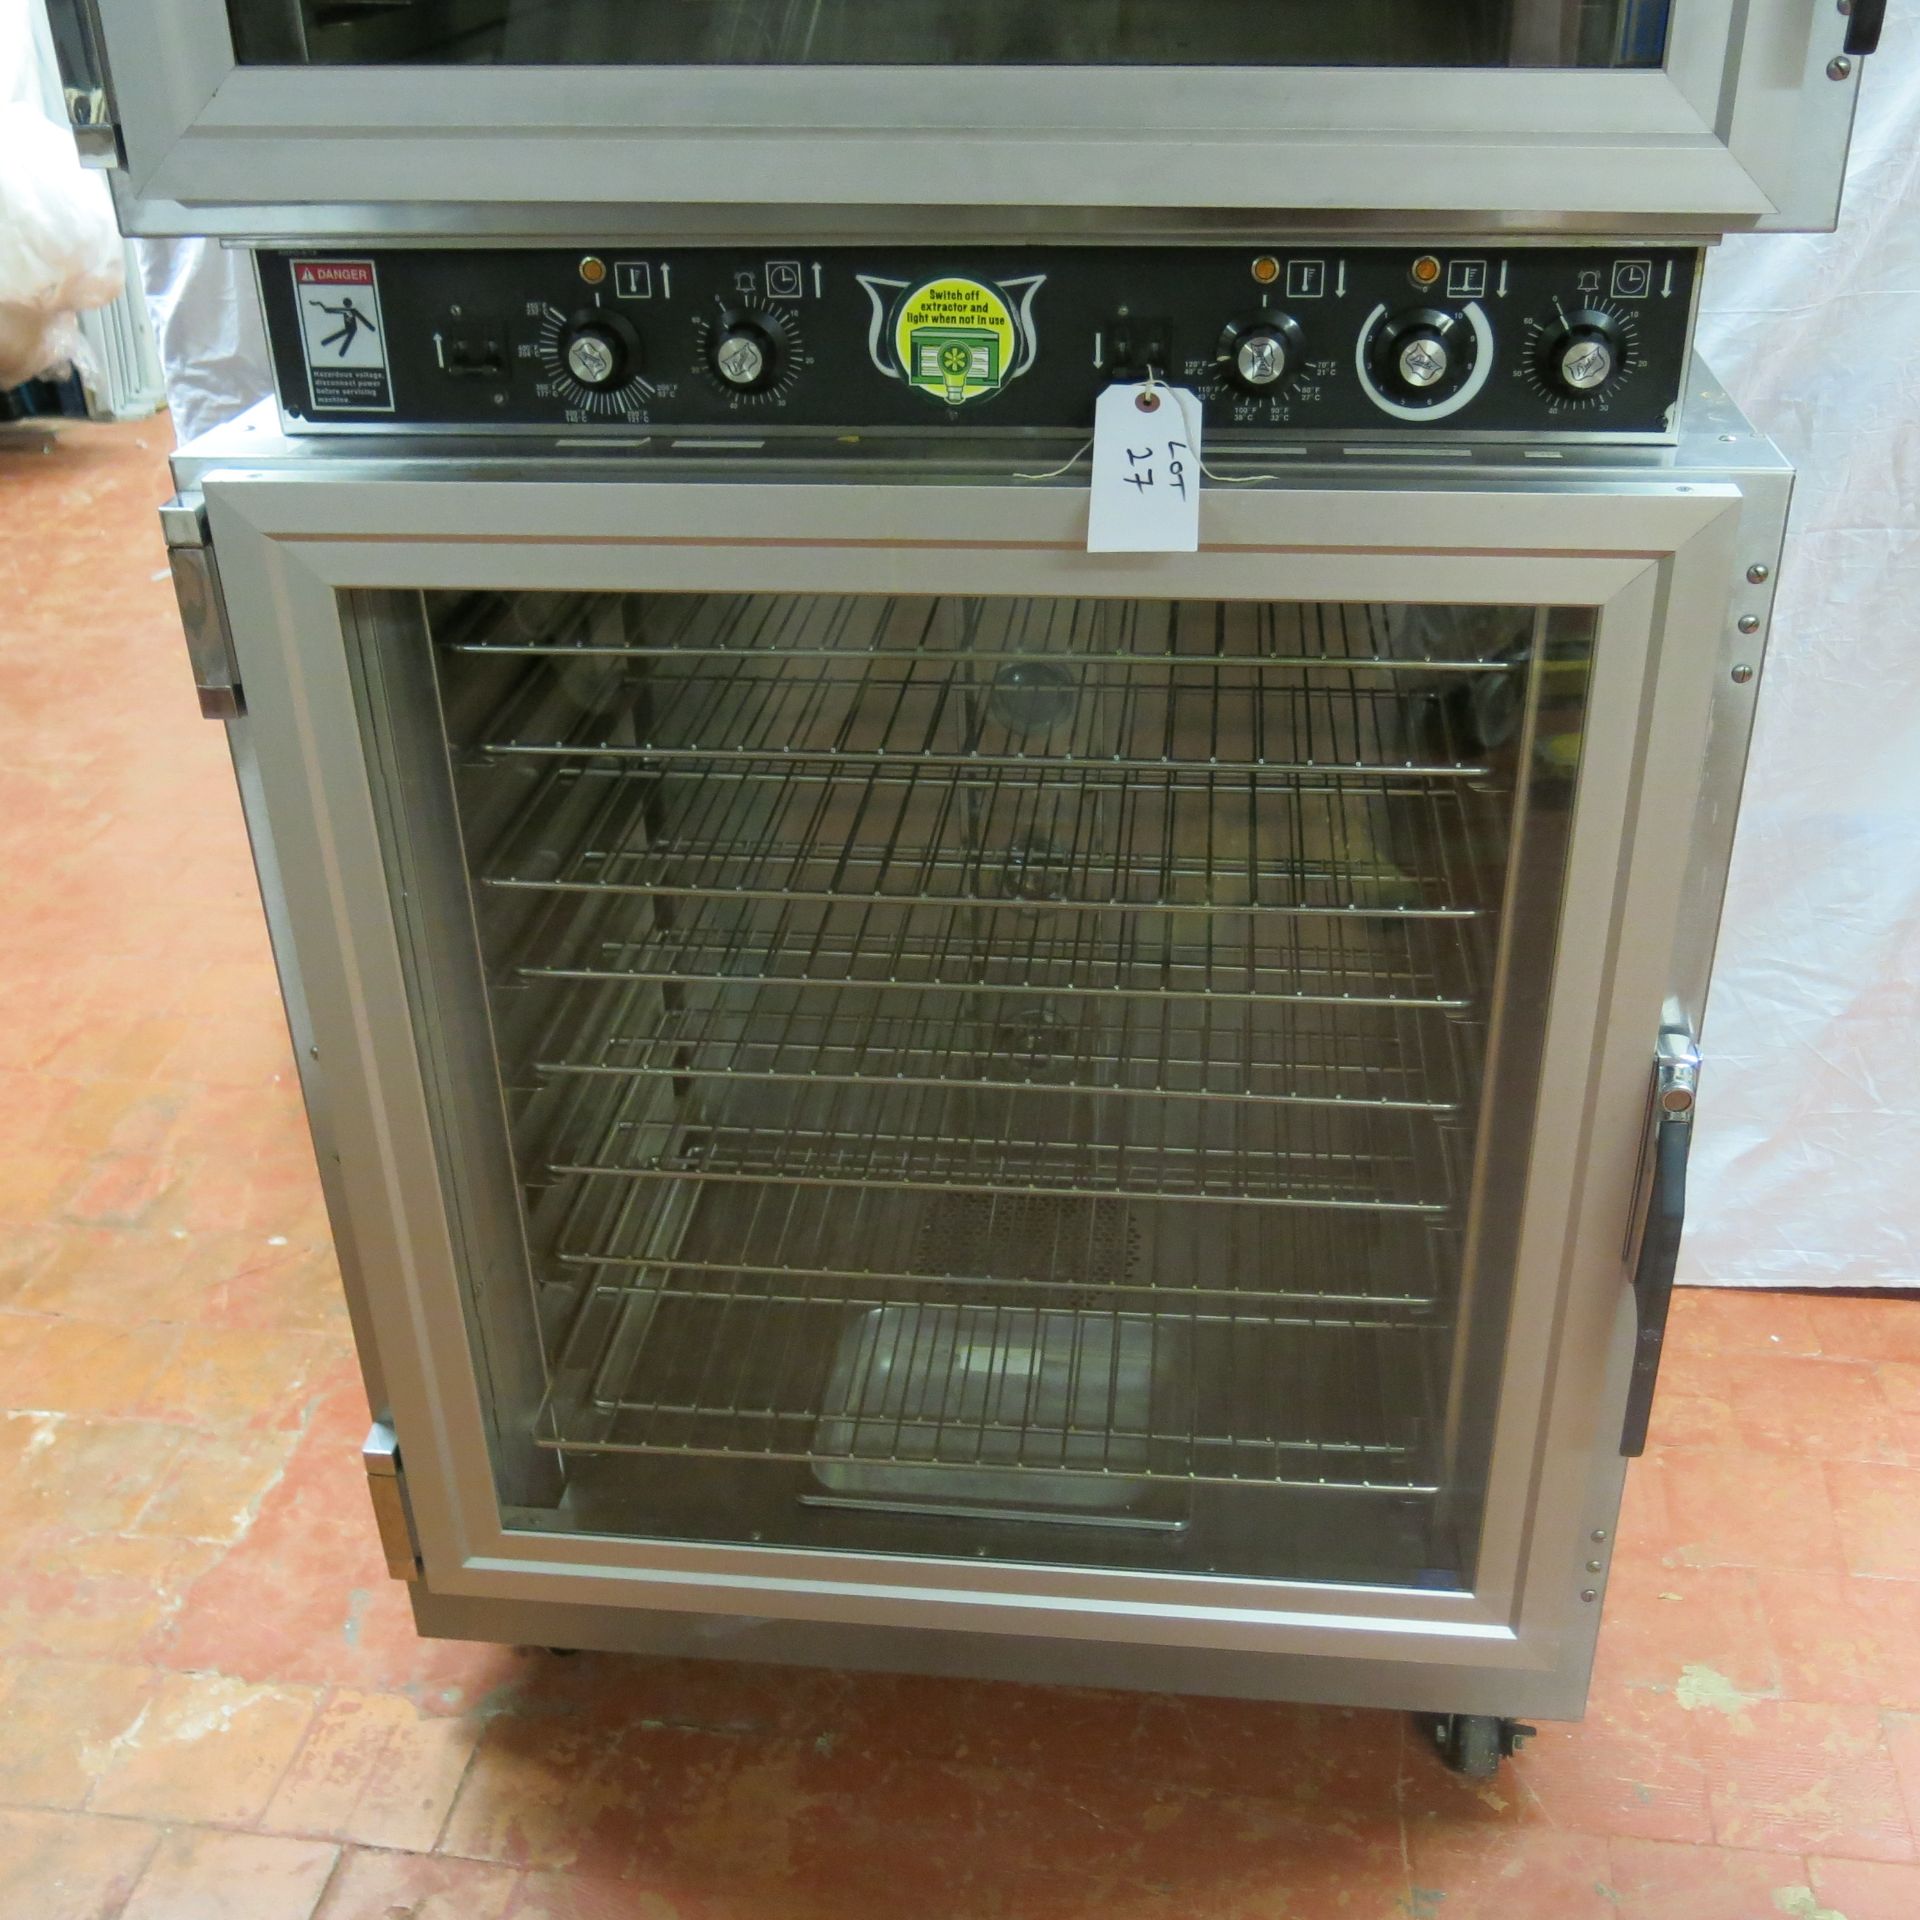 Duke Stainless Steel Commercial 3 Rack Bakery Oven (3 Phase), Model AHPO-618, S/N 30-JEJB-0194, Over - Image 3 of 8